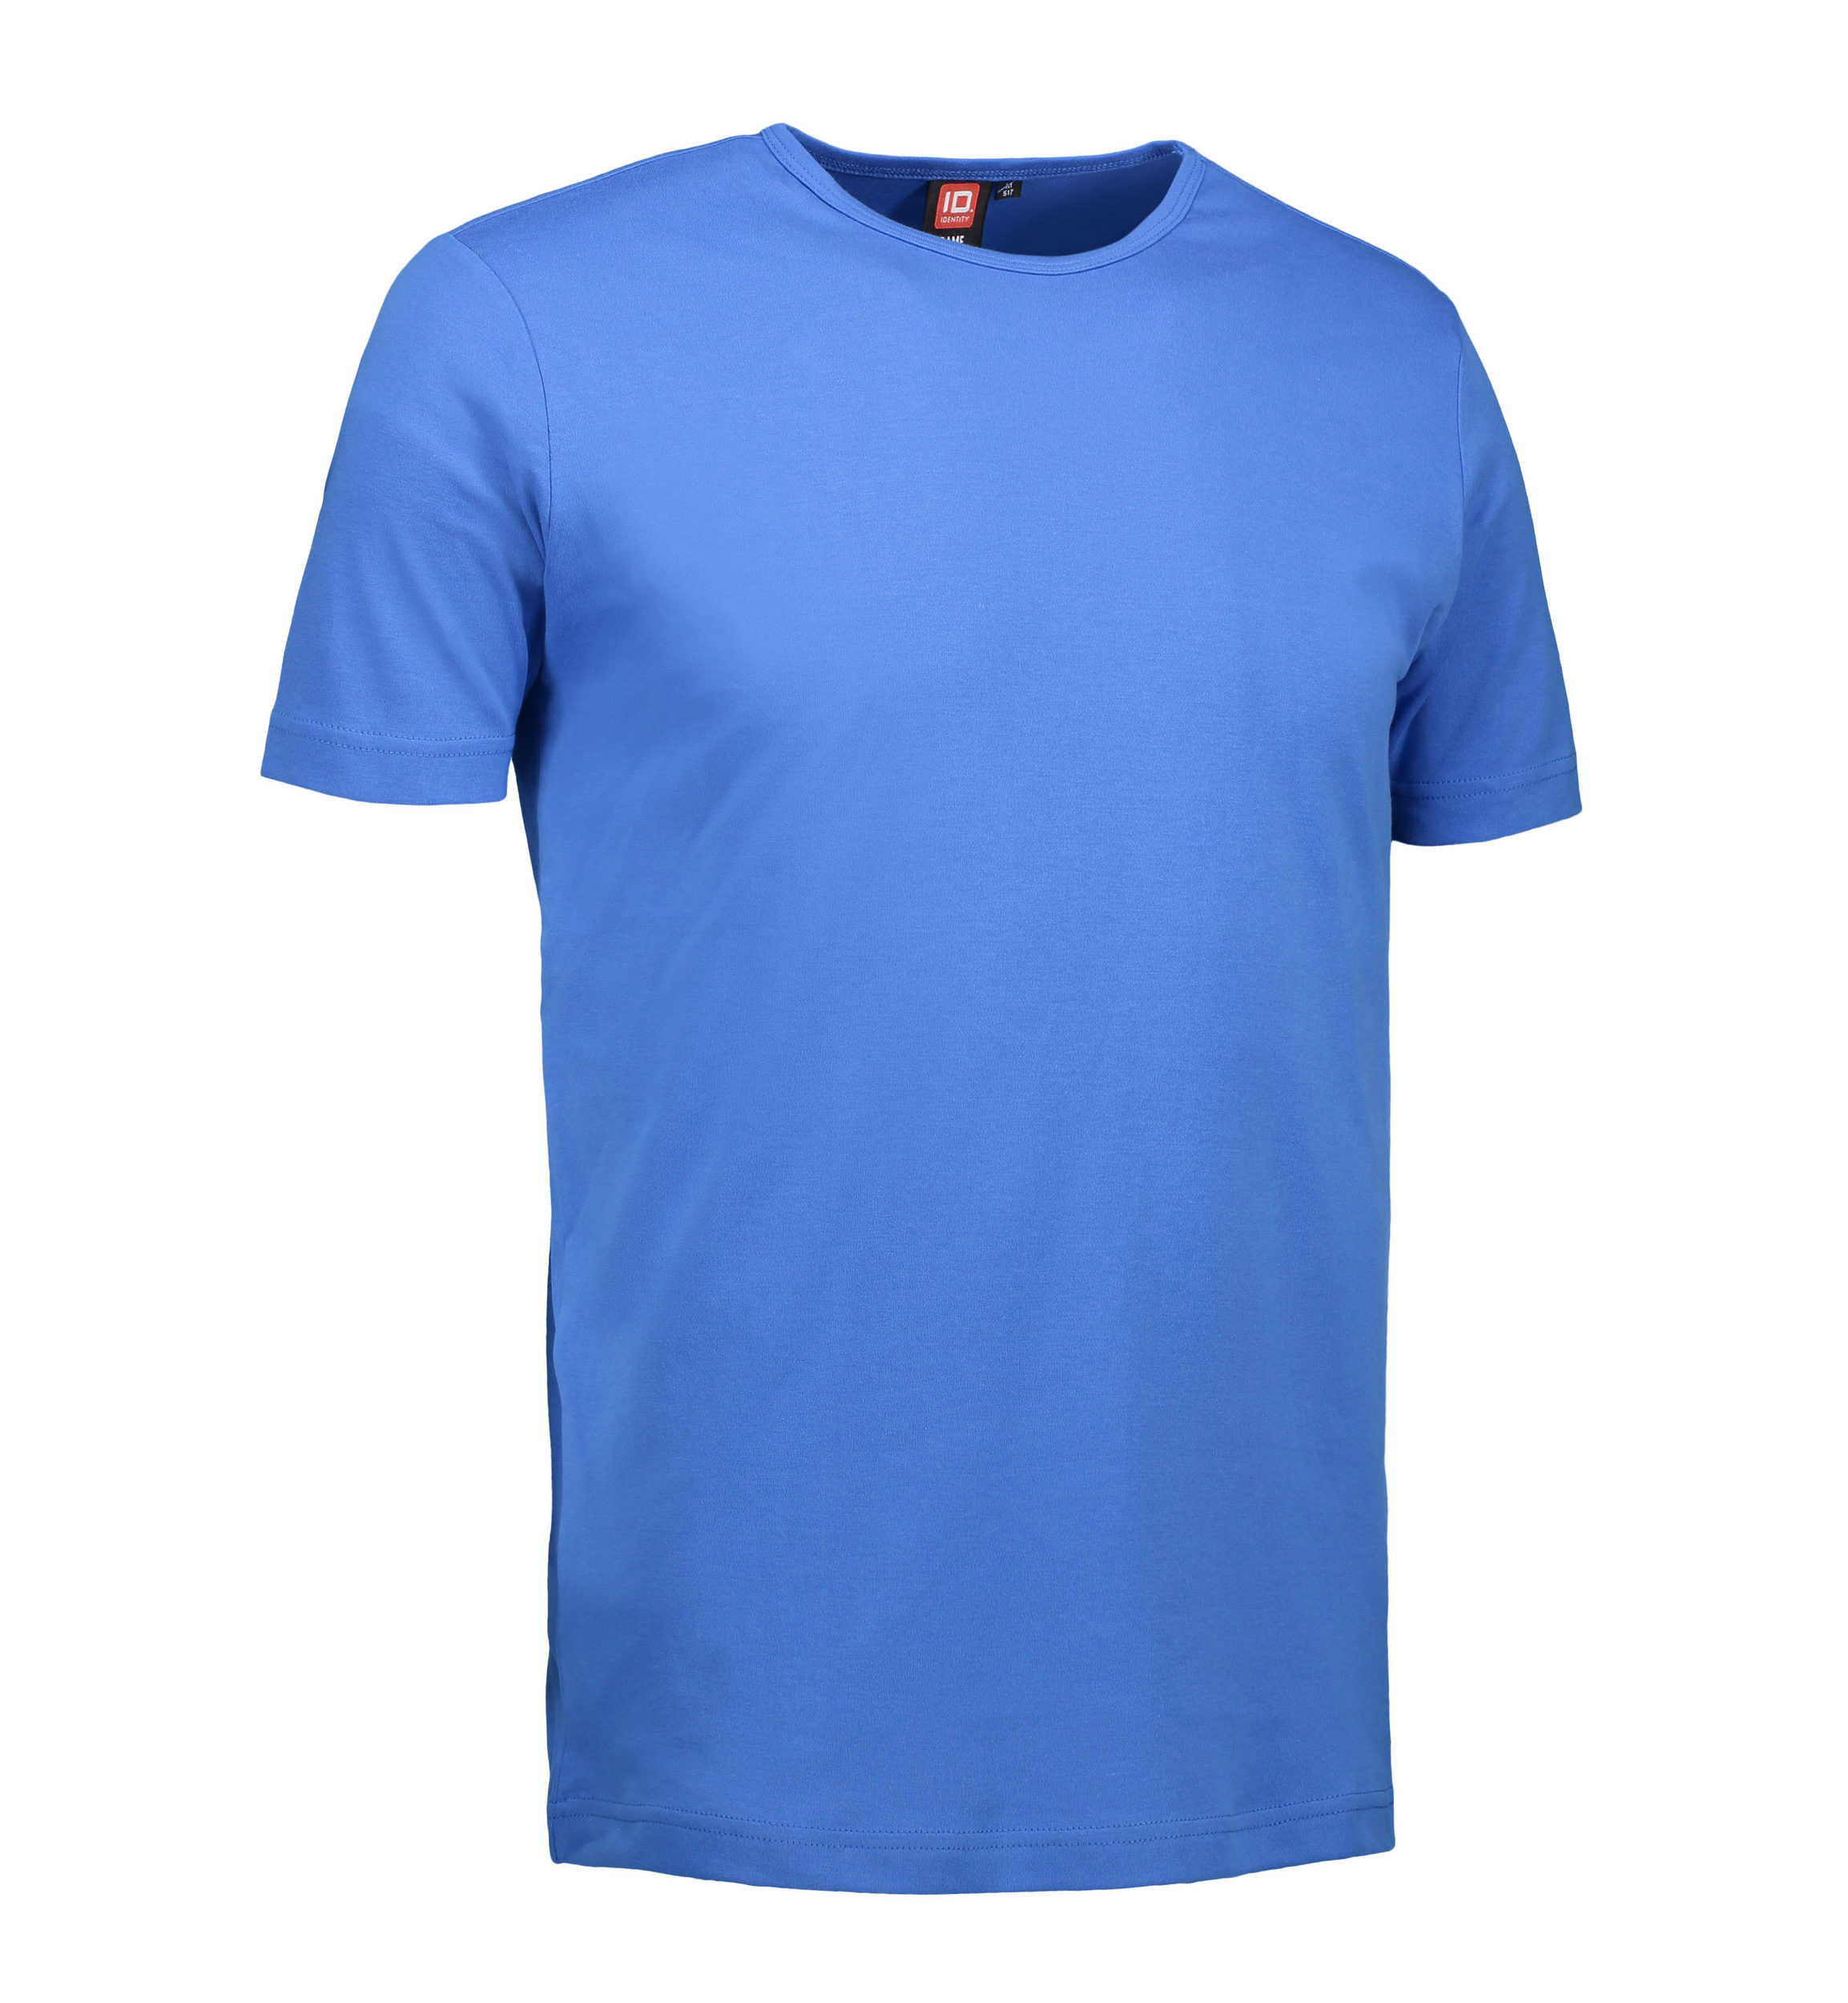 Billede af Blå t-shirt med rund hals til mænd - 3XL hos Sygeplejebutikken.dk